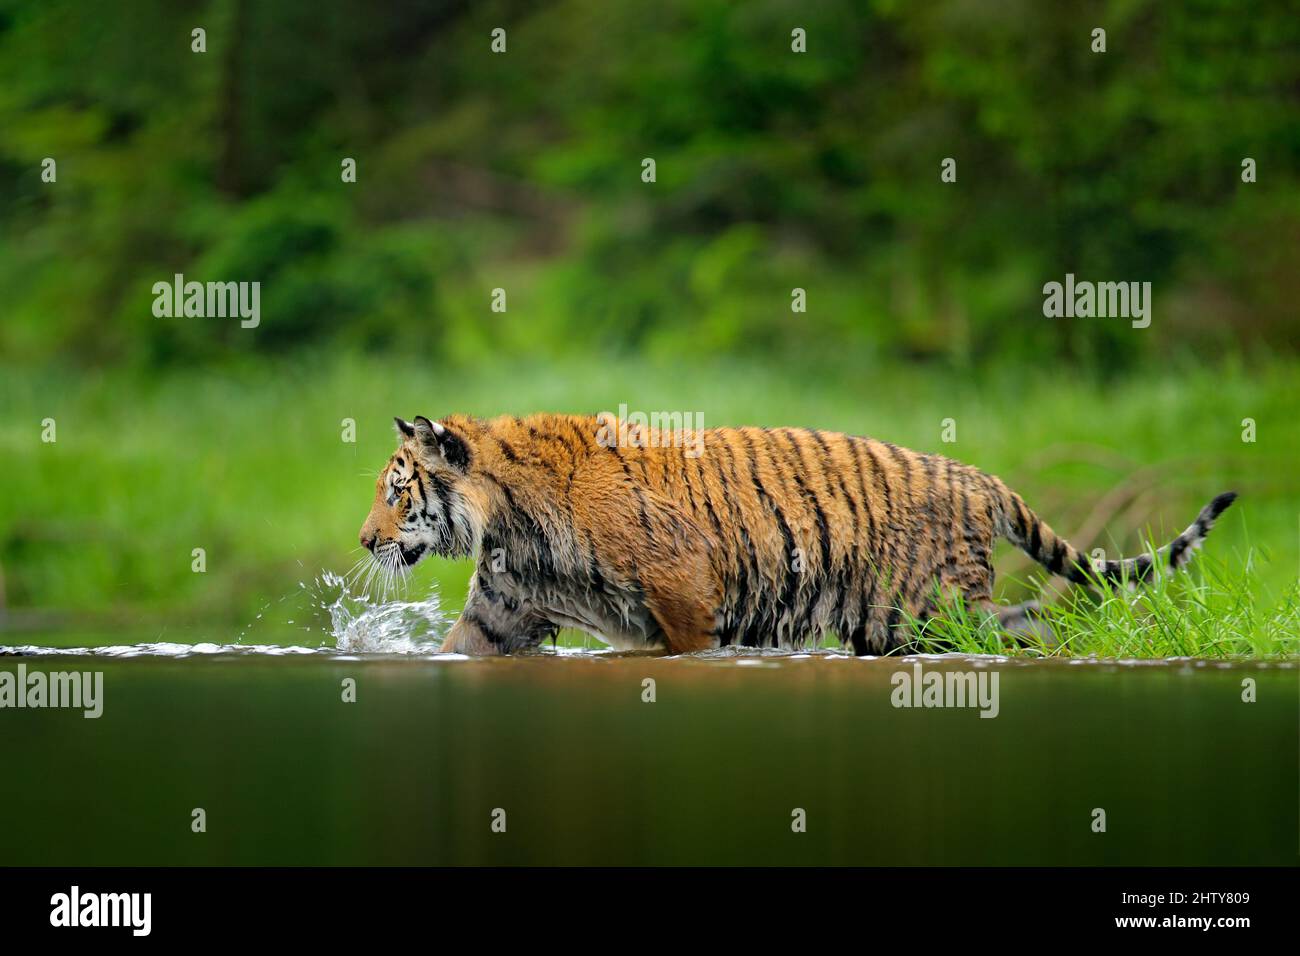 Jogo do tigre imagem de stock. Imagem de respingo, lago - 26669937